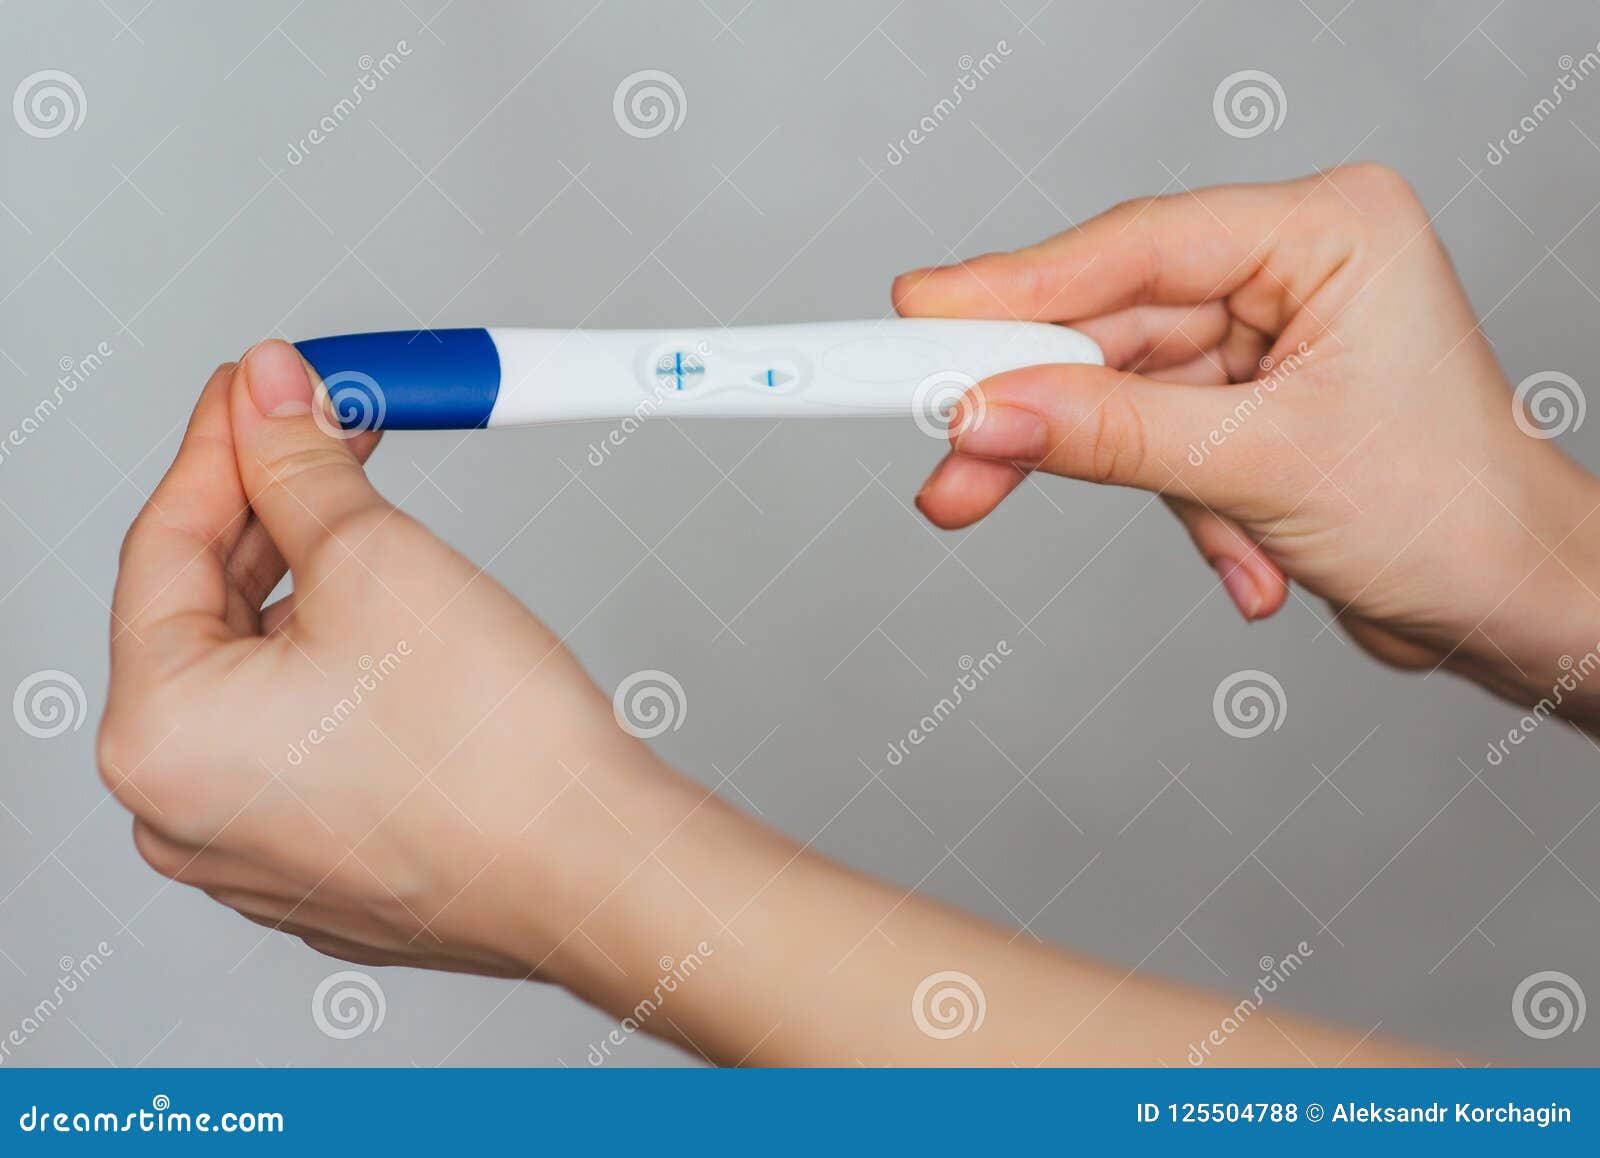 Тест на беременность в руке девушки. Положительный тест на беременность в руке. Я беременна тест в руке. Тест на беременность подарок. Тест на беременность телефоном